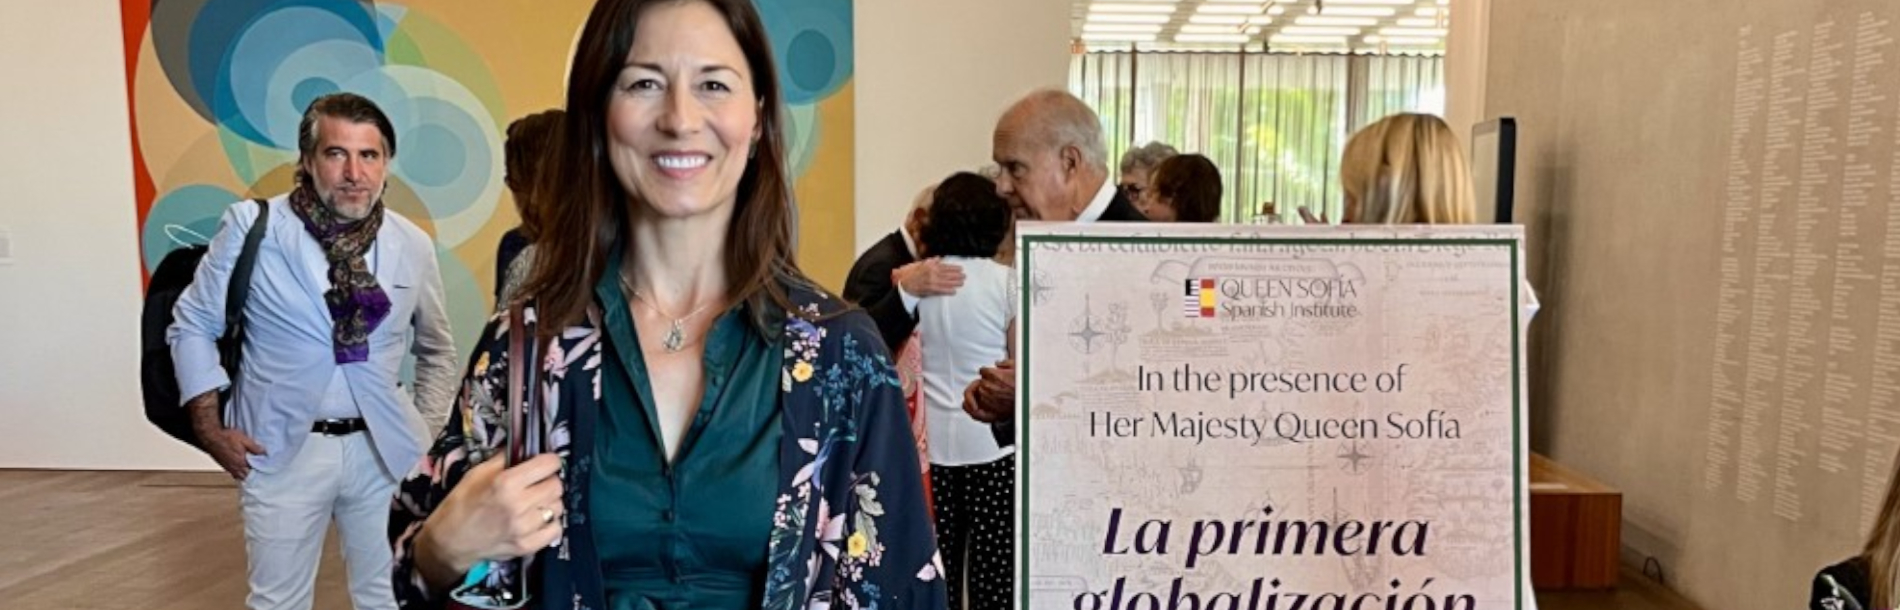 Natacha Sanz Caballero, autora del libro “Yo fui el primero” embarcada de nuevo en el viaje de Elcano